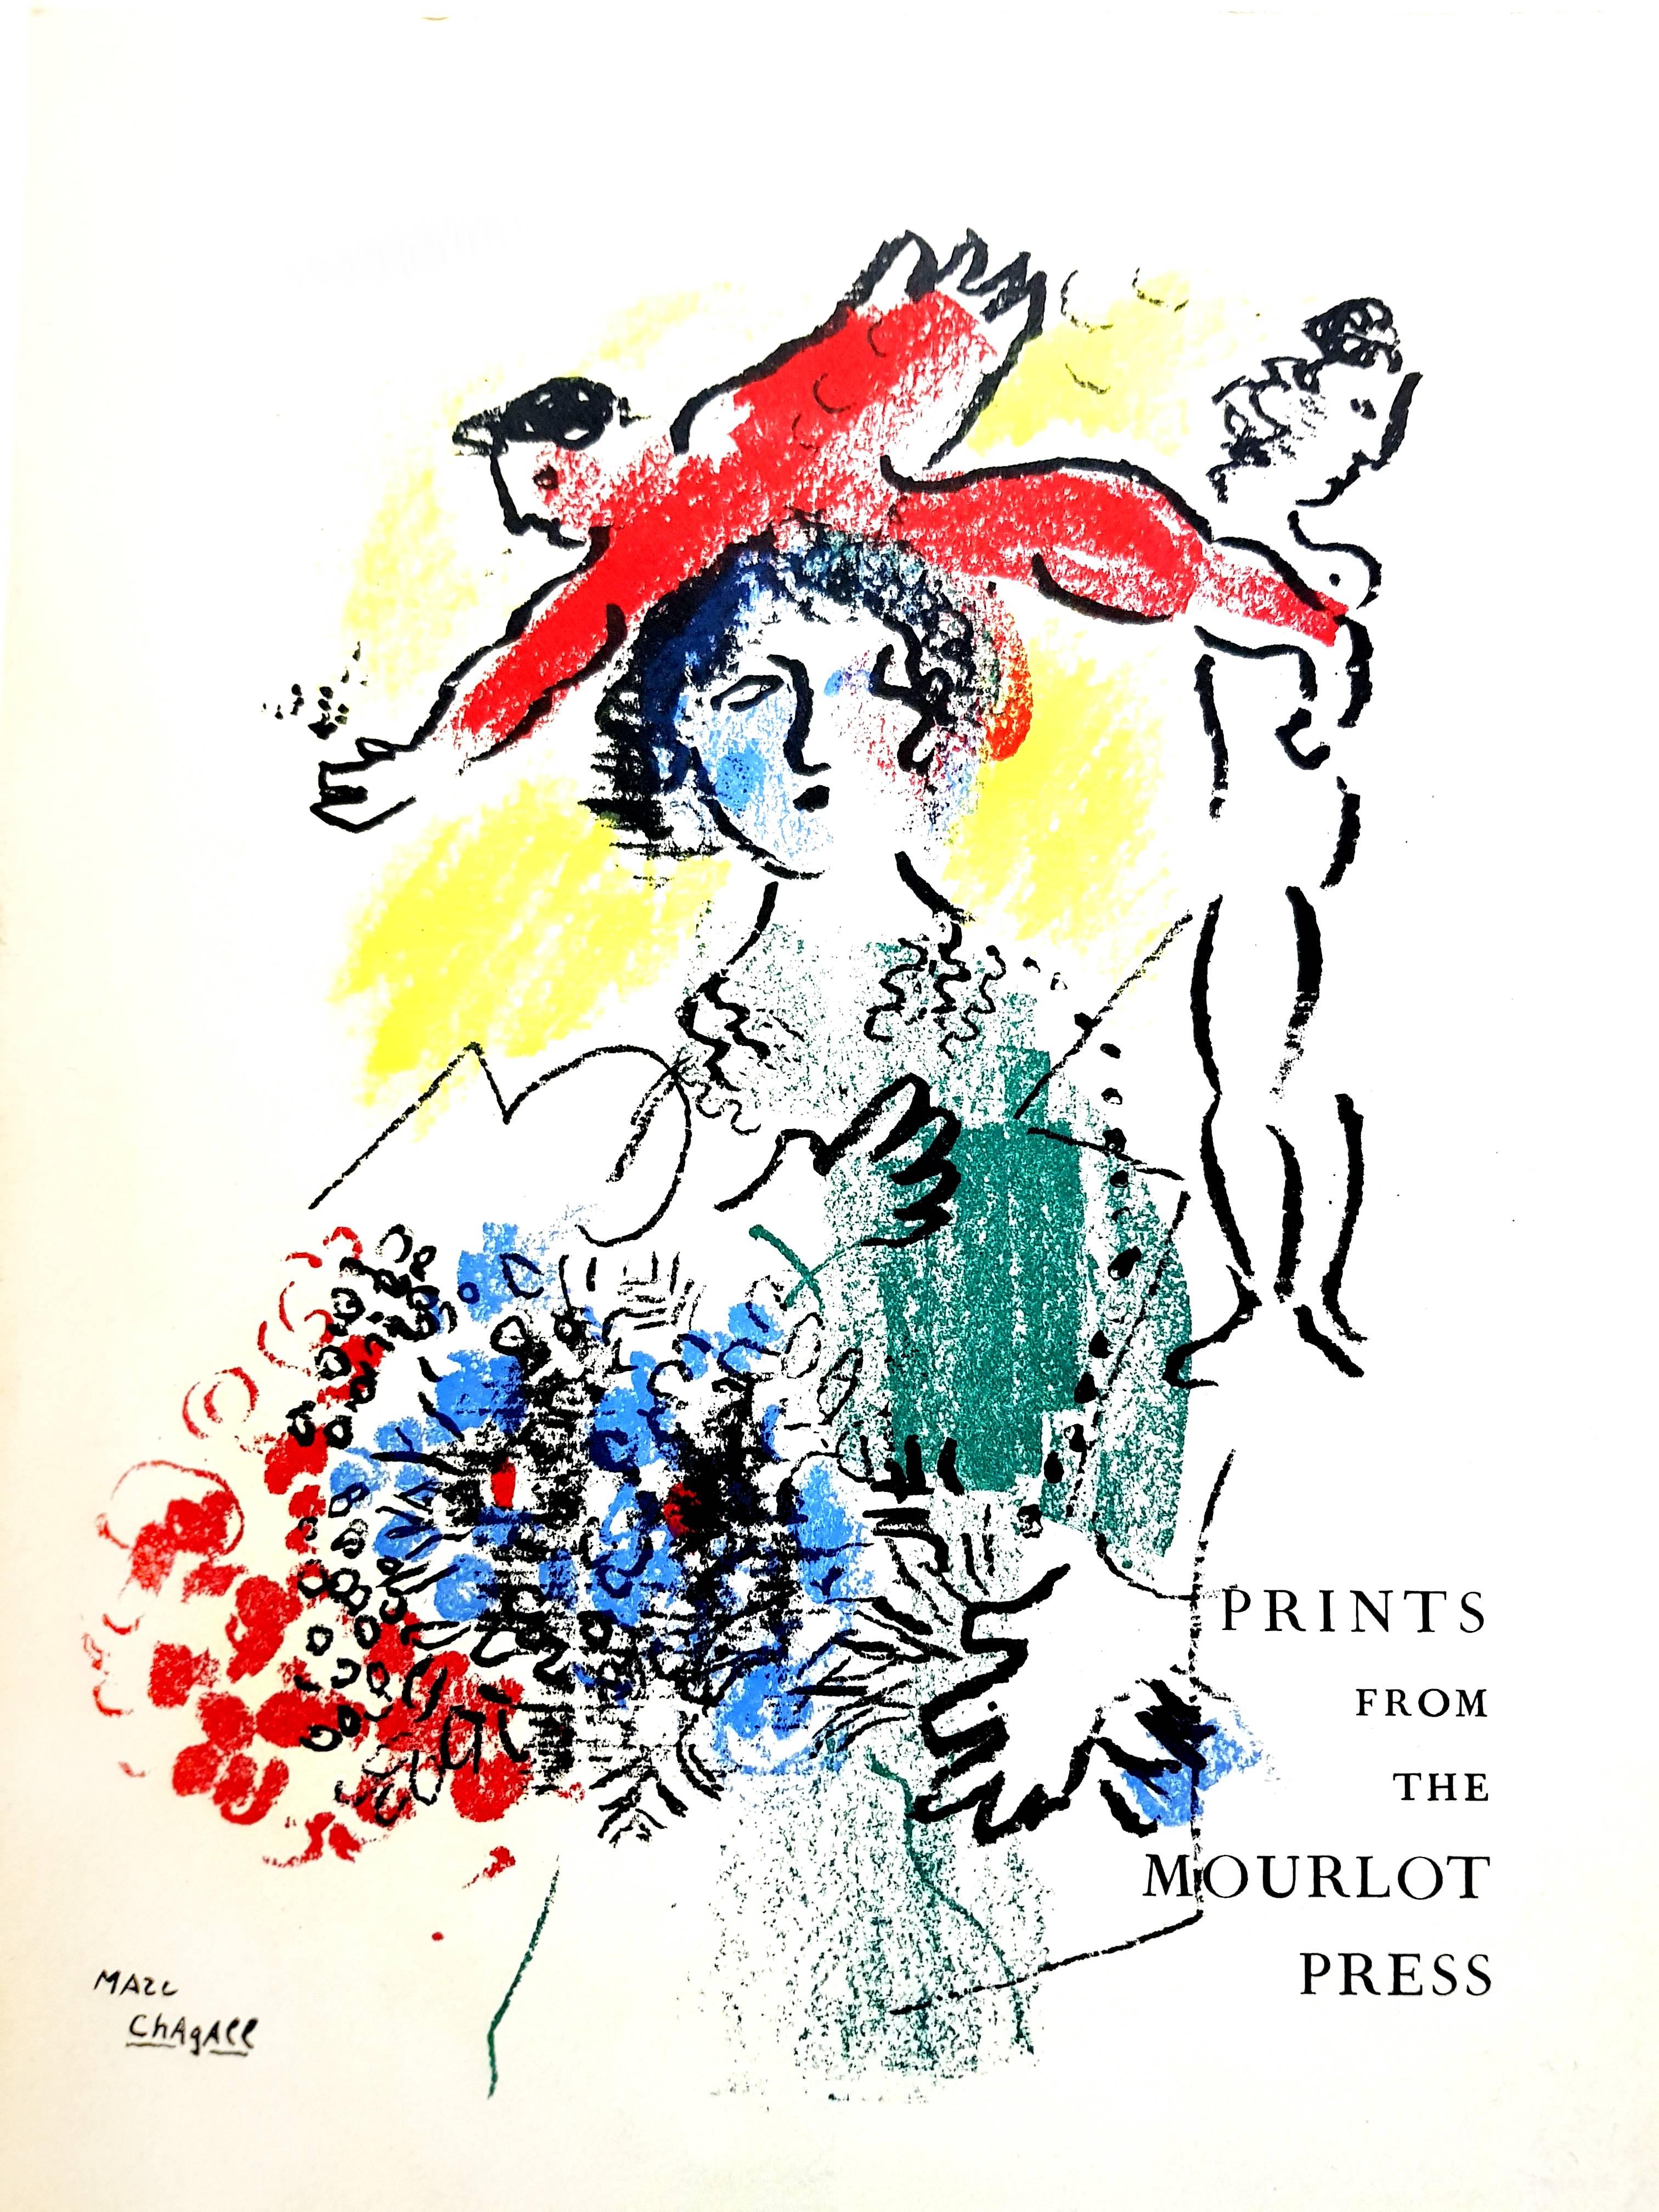 Marc Chagall - Umschlag - Original-Lithographie 
1964
Abmessungen: 30 x 20 cm
Auflage von 200 (eines der 200 Exemplare auf Vélin de Rives)
Mourlot Press, 1964

Marc Chagall (geboren 1887)

Marc Chagall wurde 1887 in Weißrussland geboren und